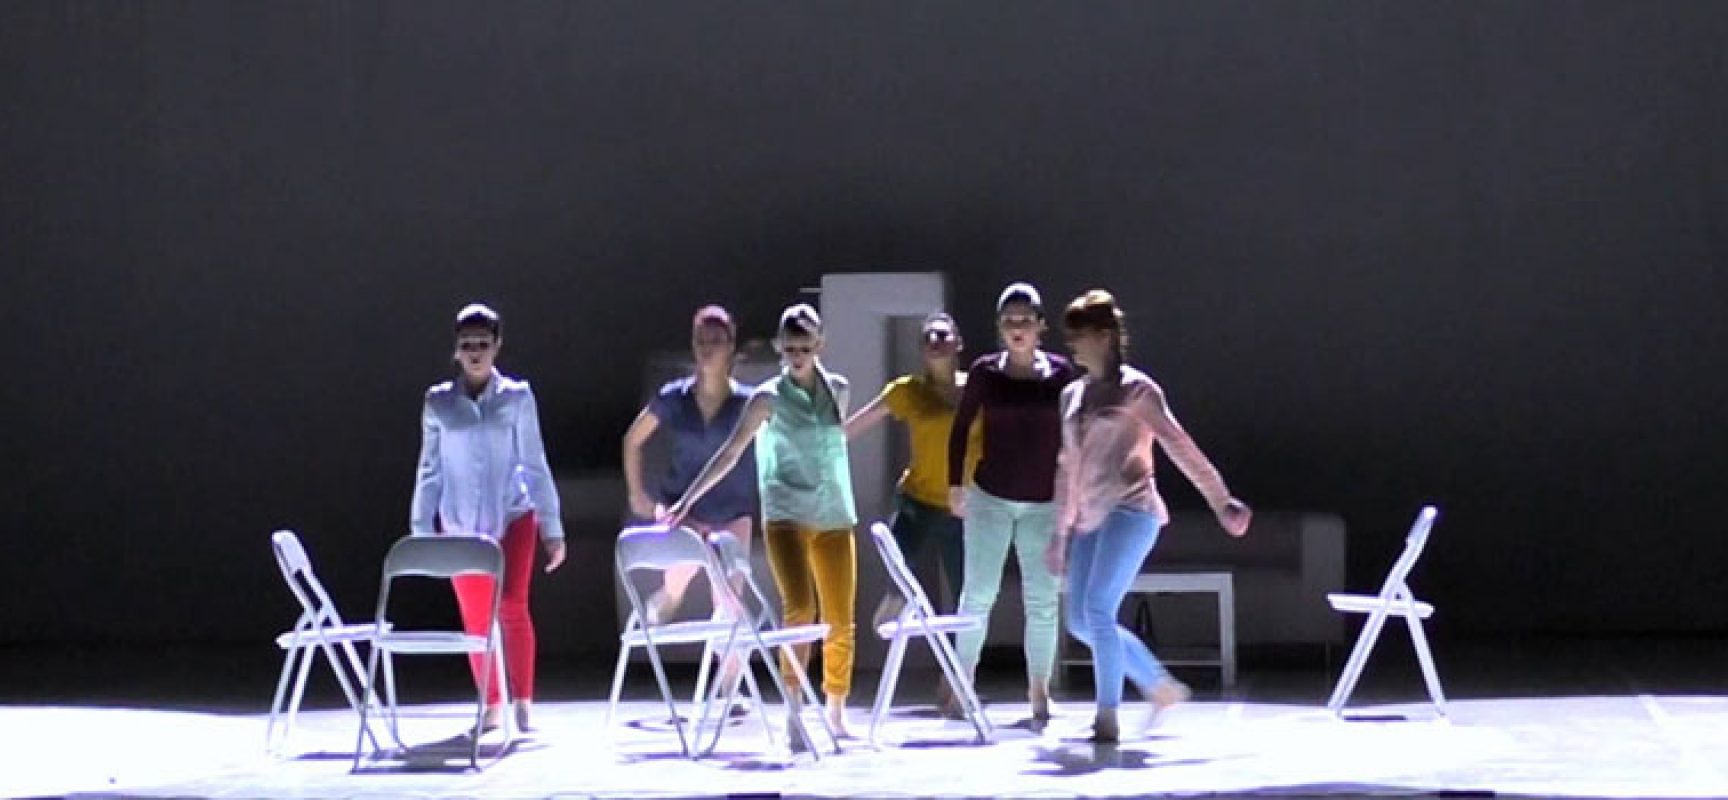 La LineOut Dance Company in scena a Bisceglie per la raccolta fondi Epass